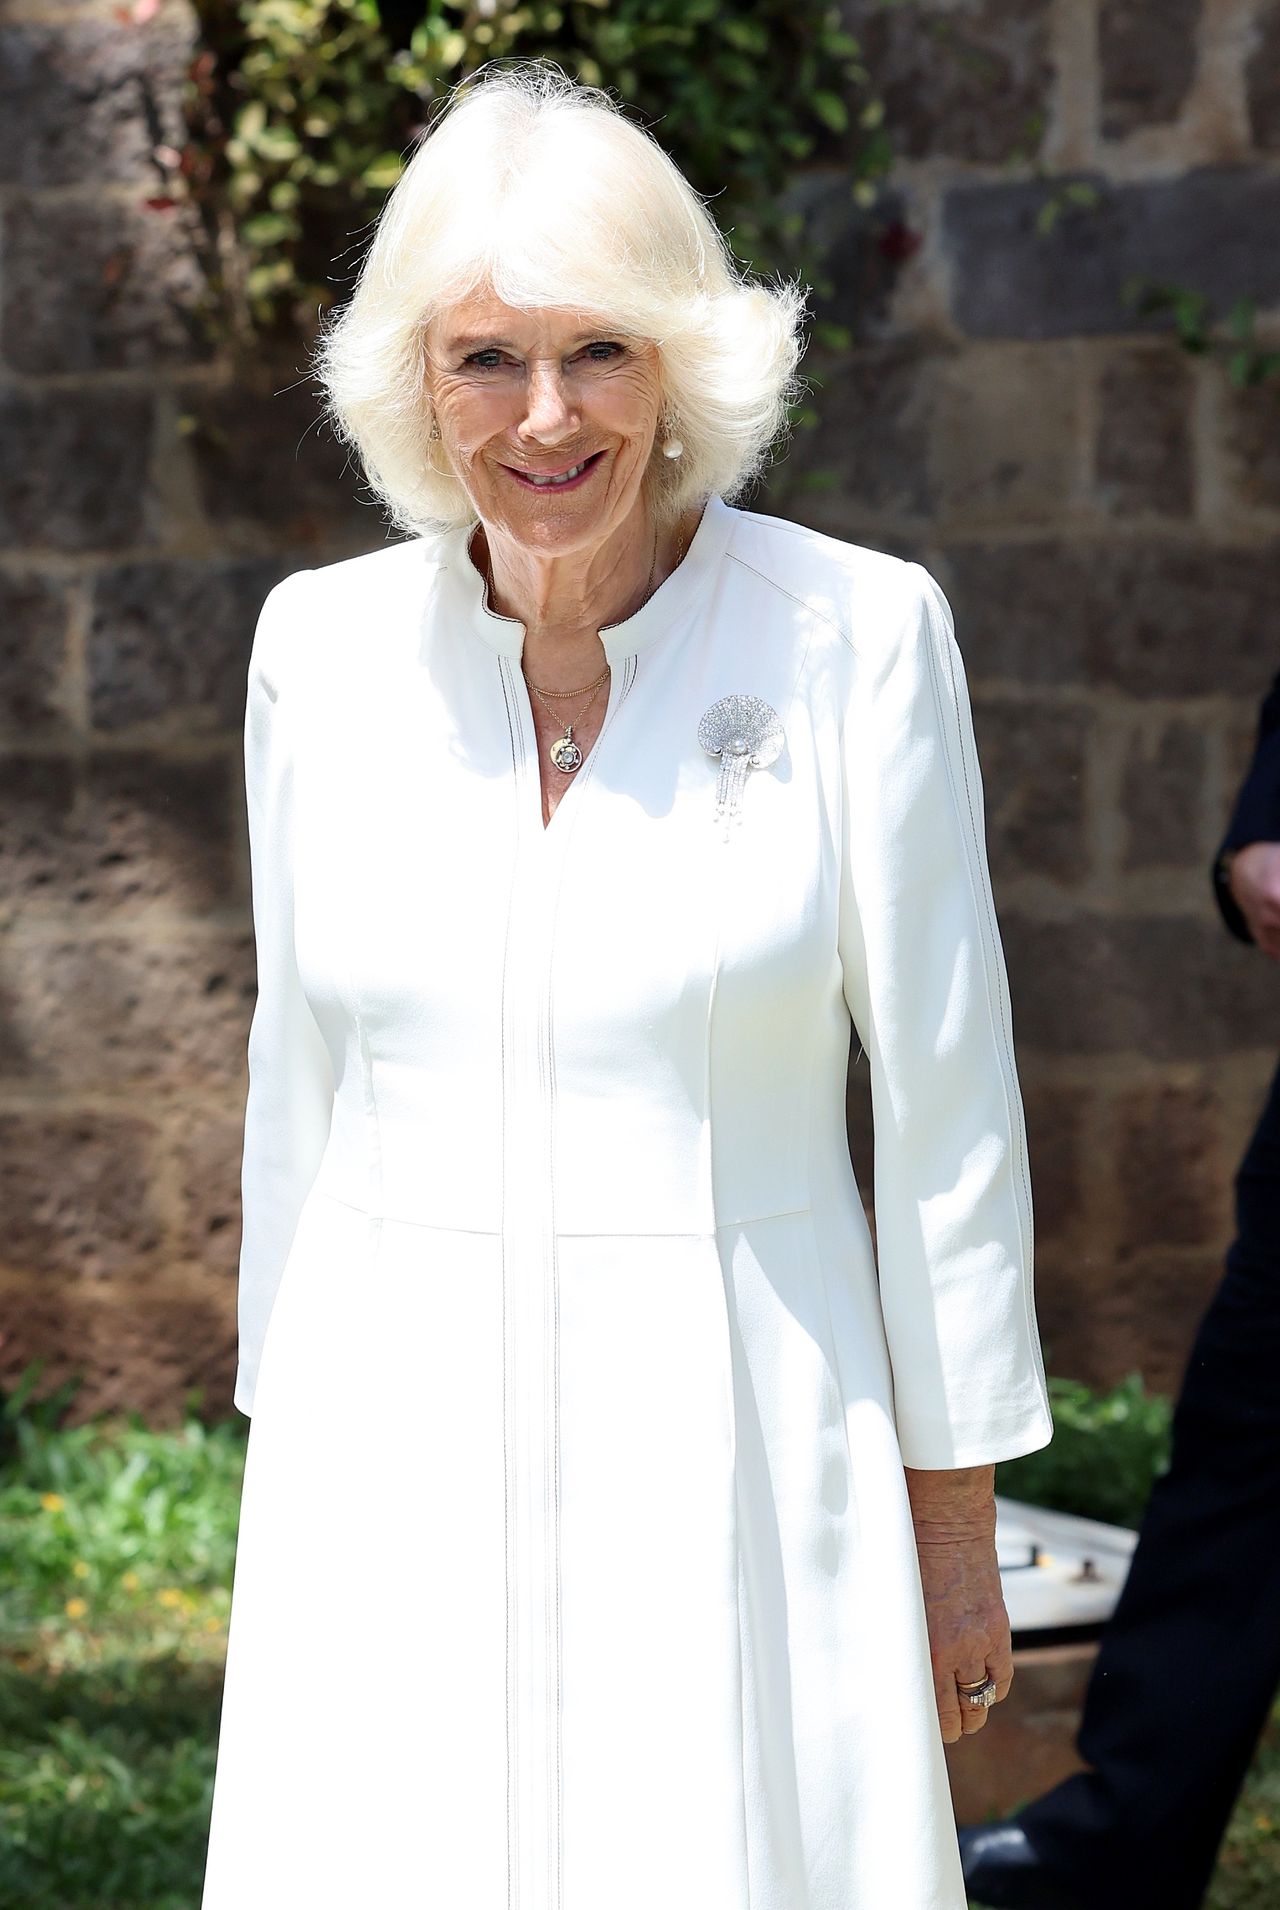 Queen Camilla wore Queen Elizabeth's brooch during her visit to Kenya.